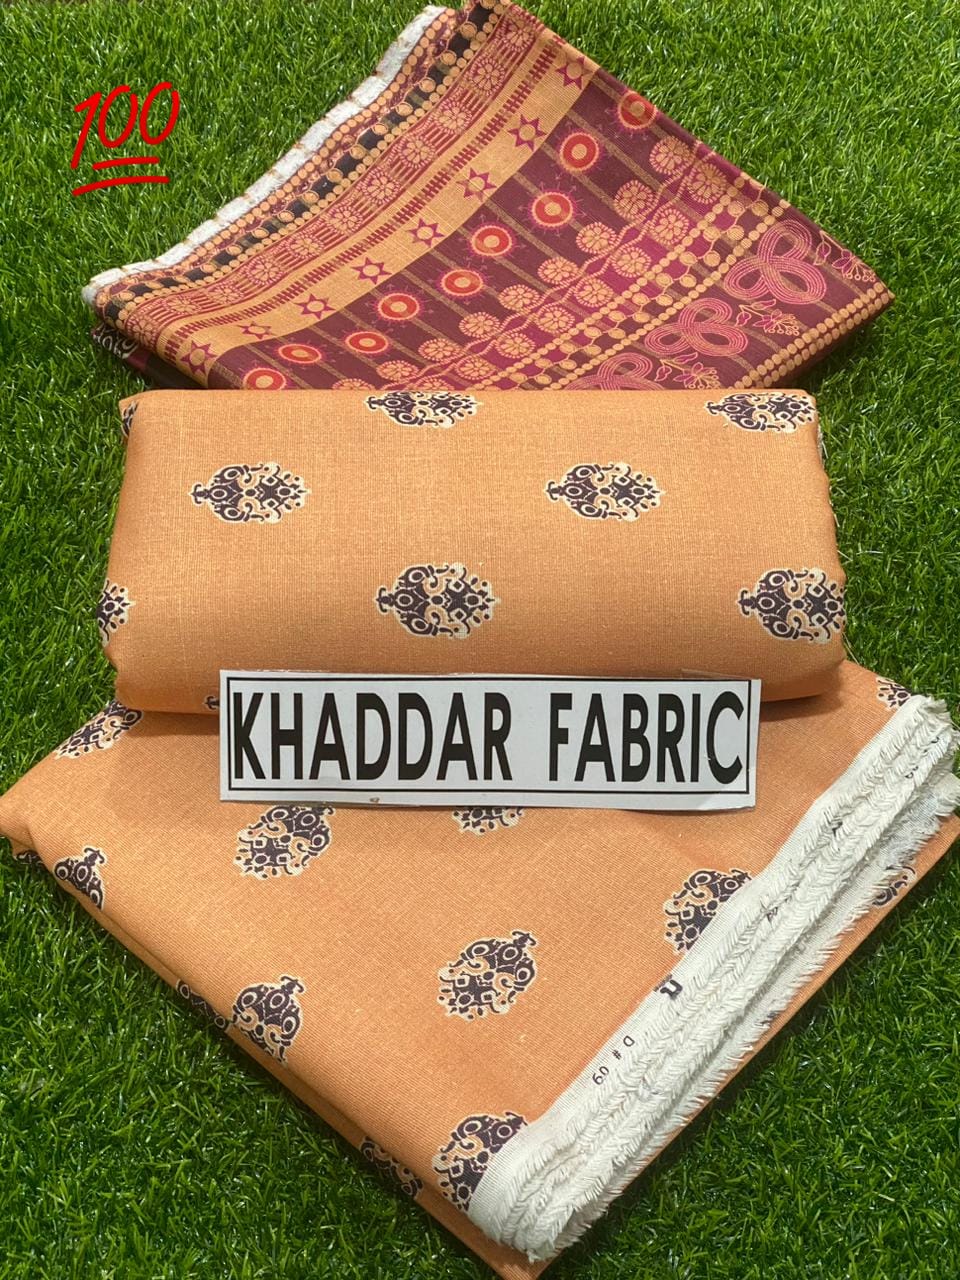 Khaddar Fabric